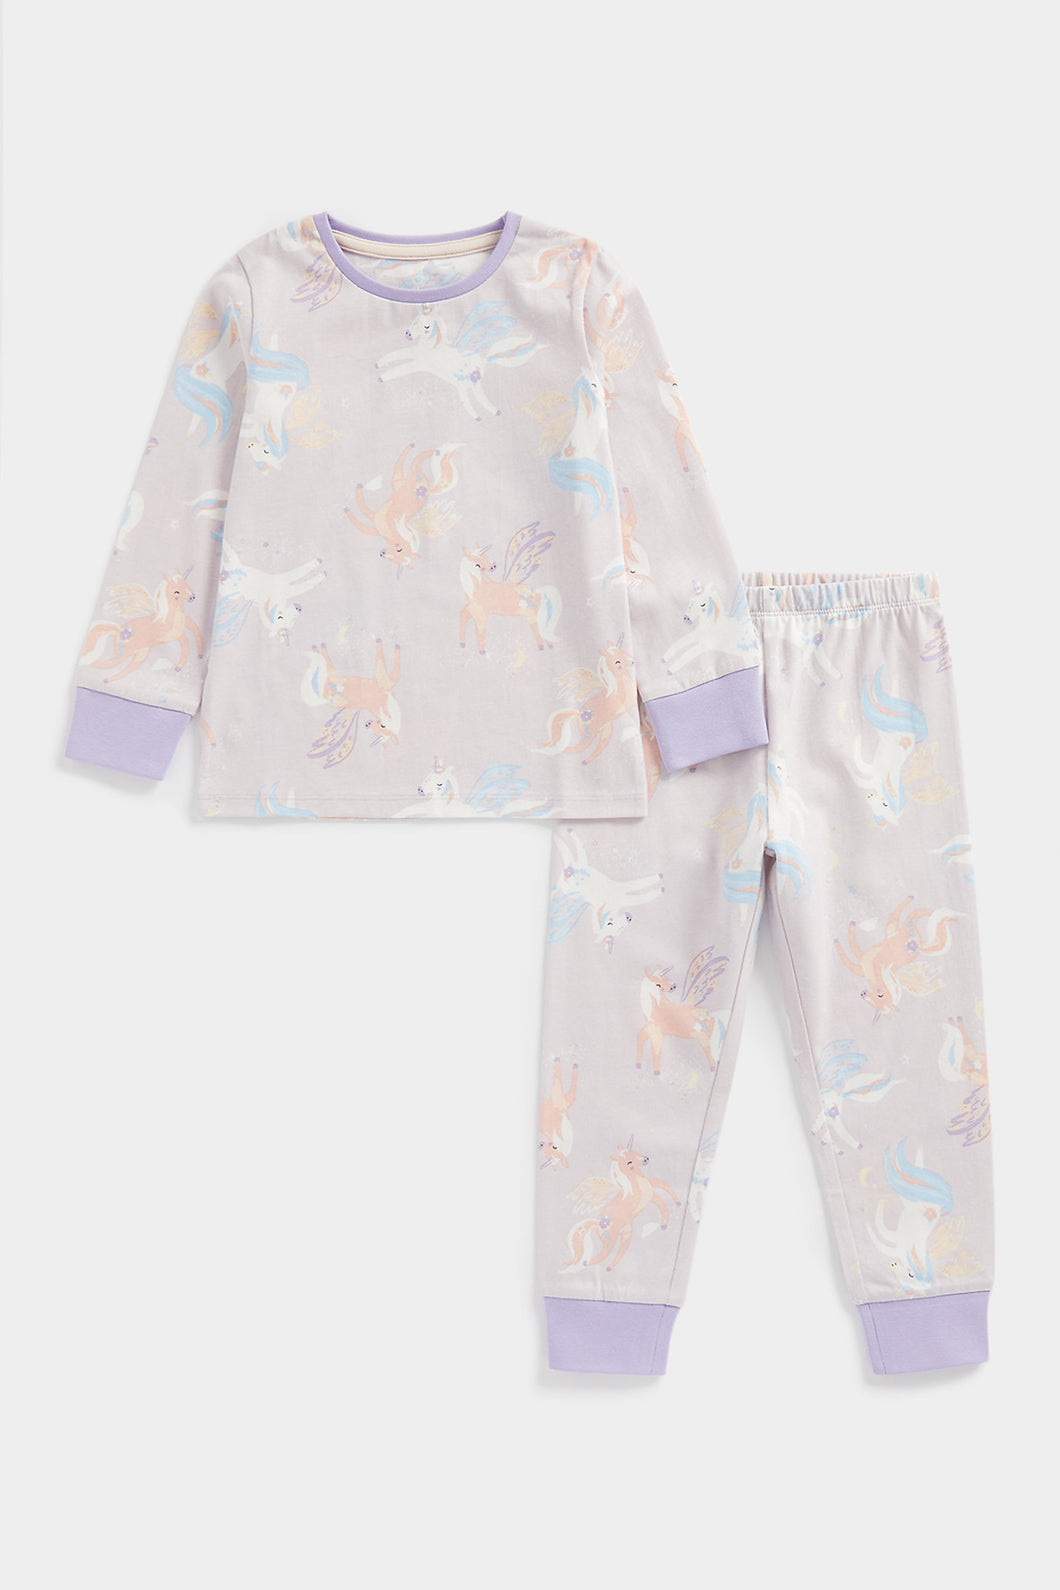 Mothercare Unicorn Pyjamas